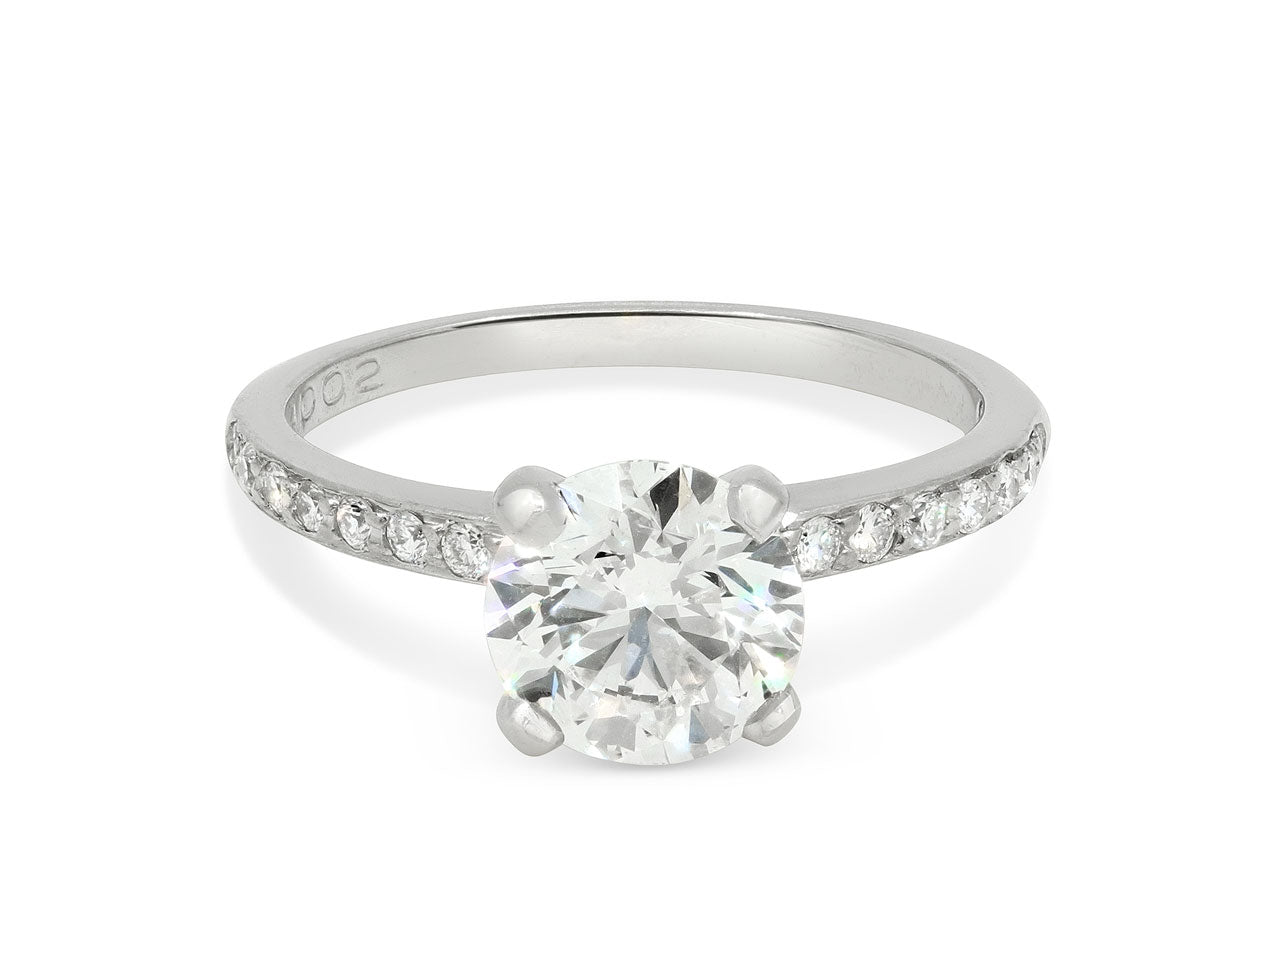 DeBeers 'Classic Pavé' Diamond Solitaire Ring, 1.51 carat H/SI2, in Platinum